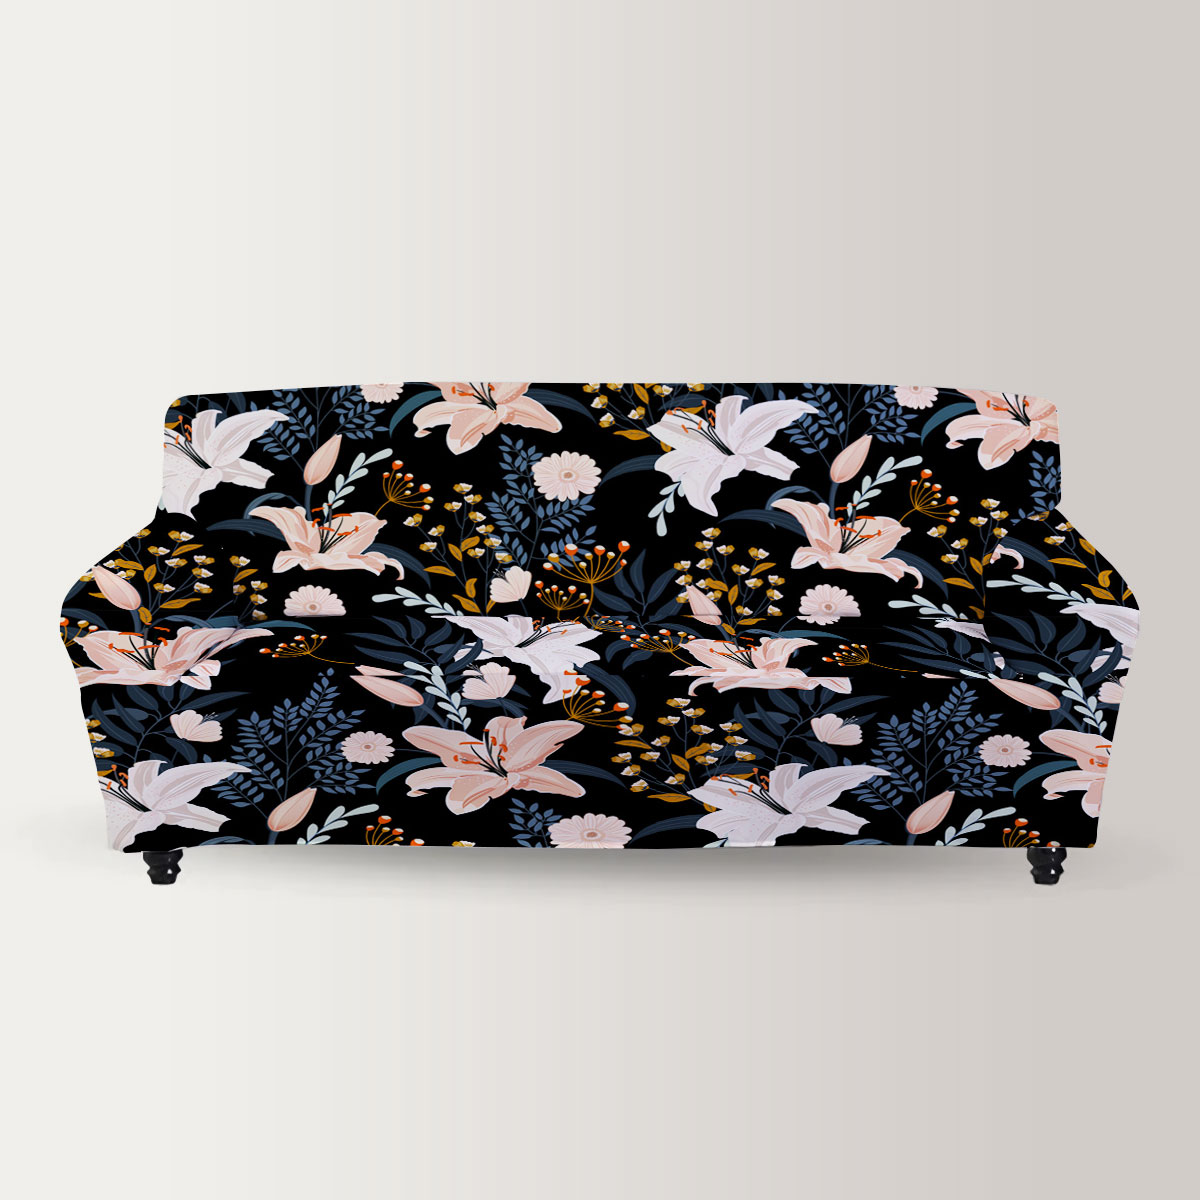 Retro Lily Flowers Sofa Cover